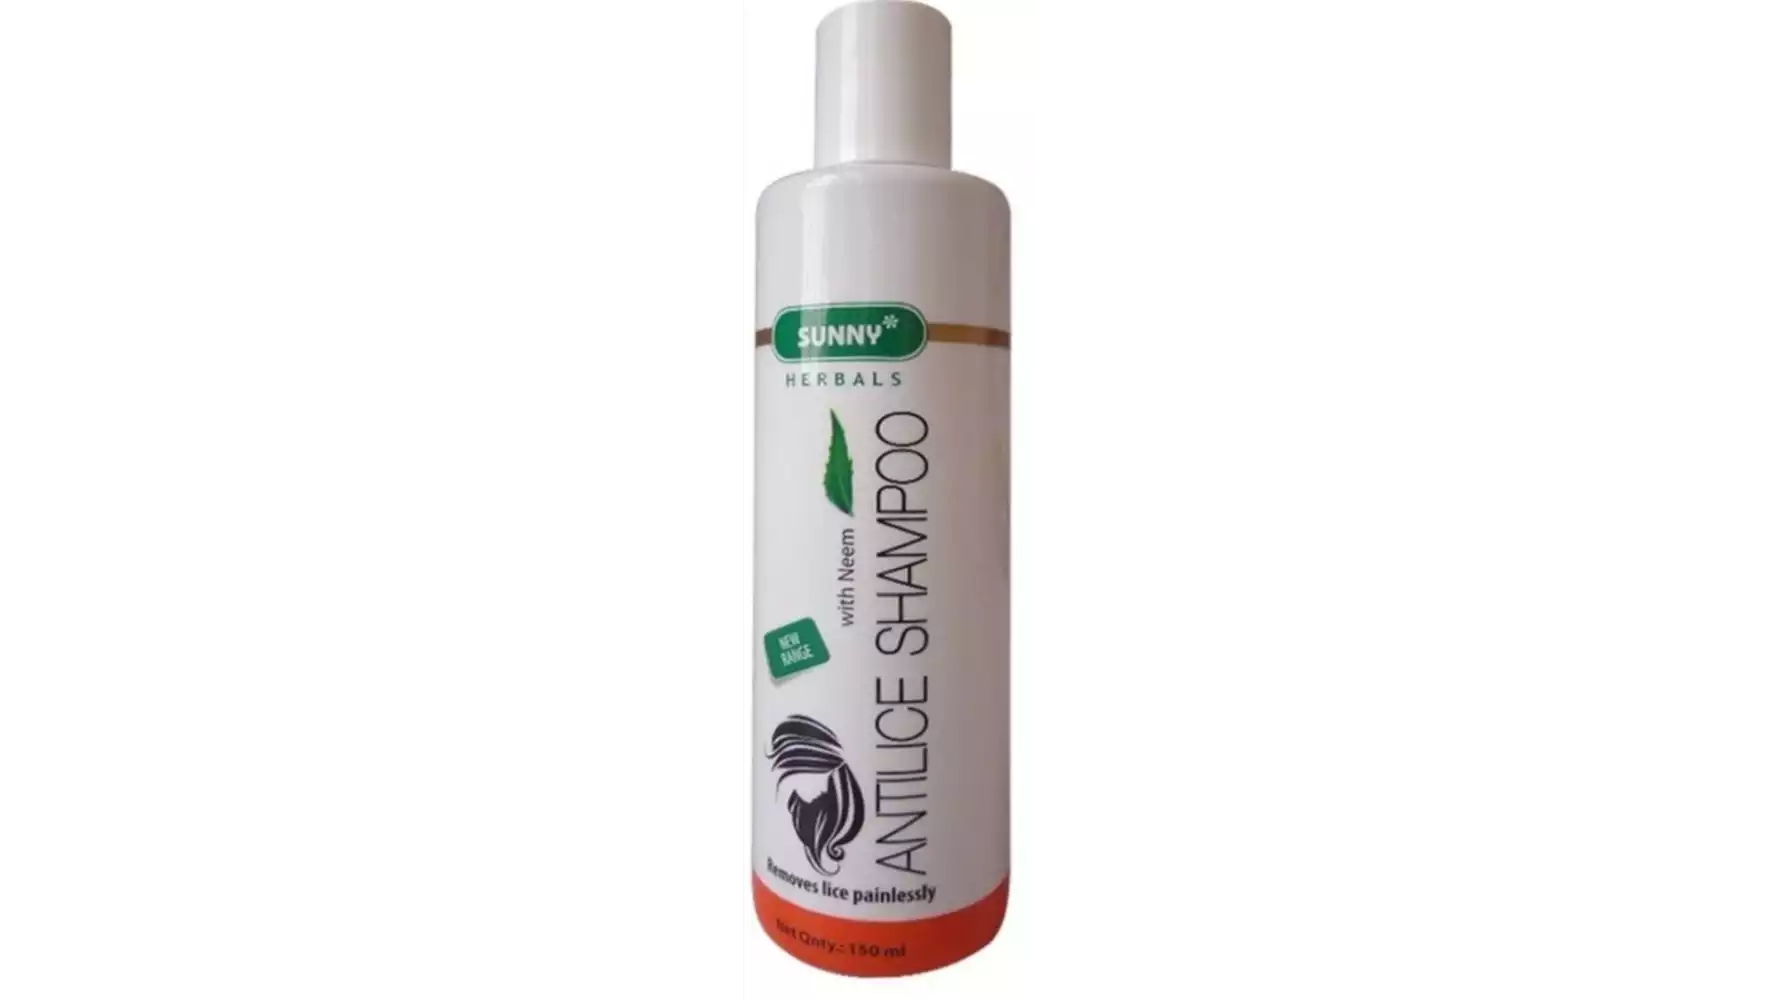 Bakson Sunny Anti Lice Shampoo (150ml)